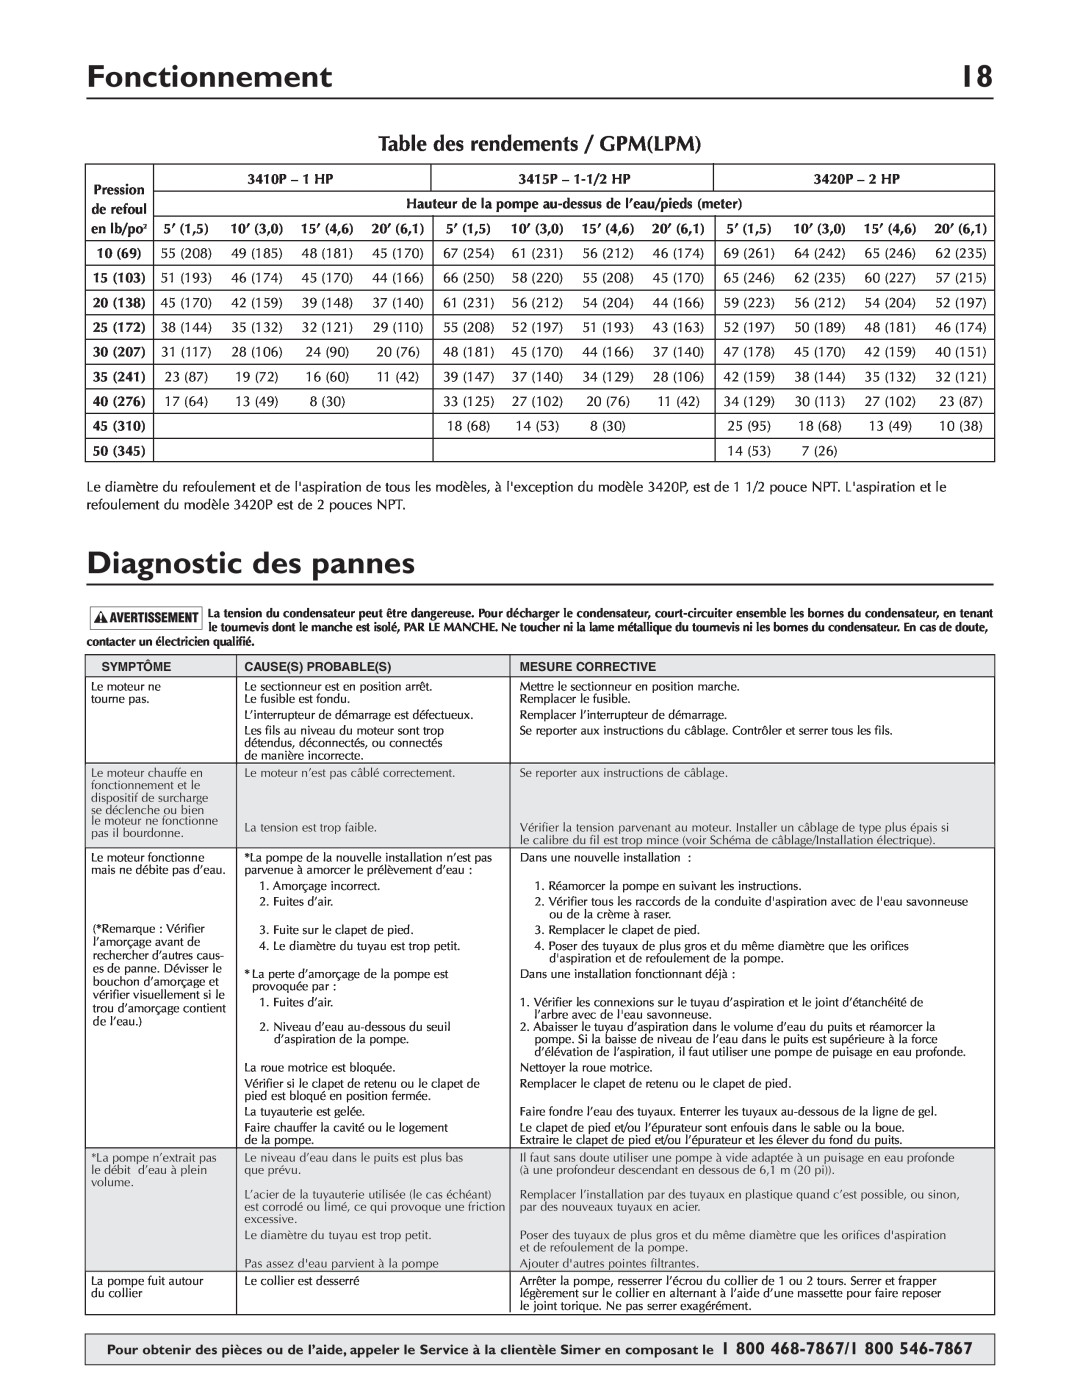 Simer Pumps 3410P, 3415P, 3420P owner manual Diagnostic des pannes, Fonctionnement, Table des rendements / GPMLPM 